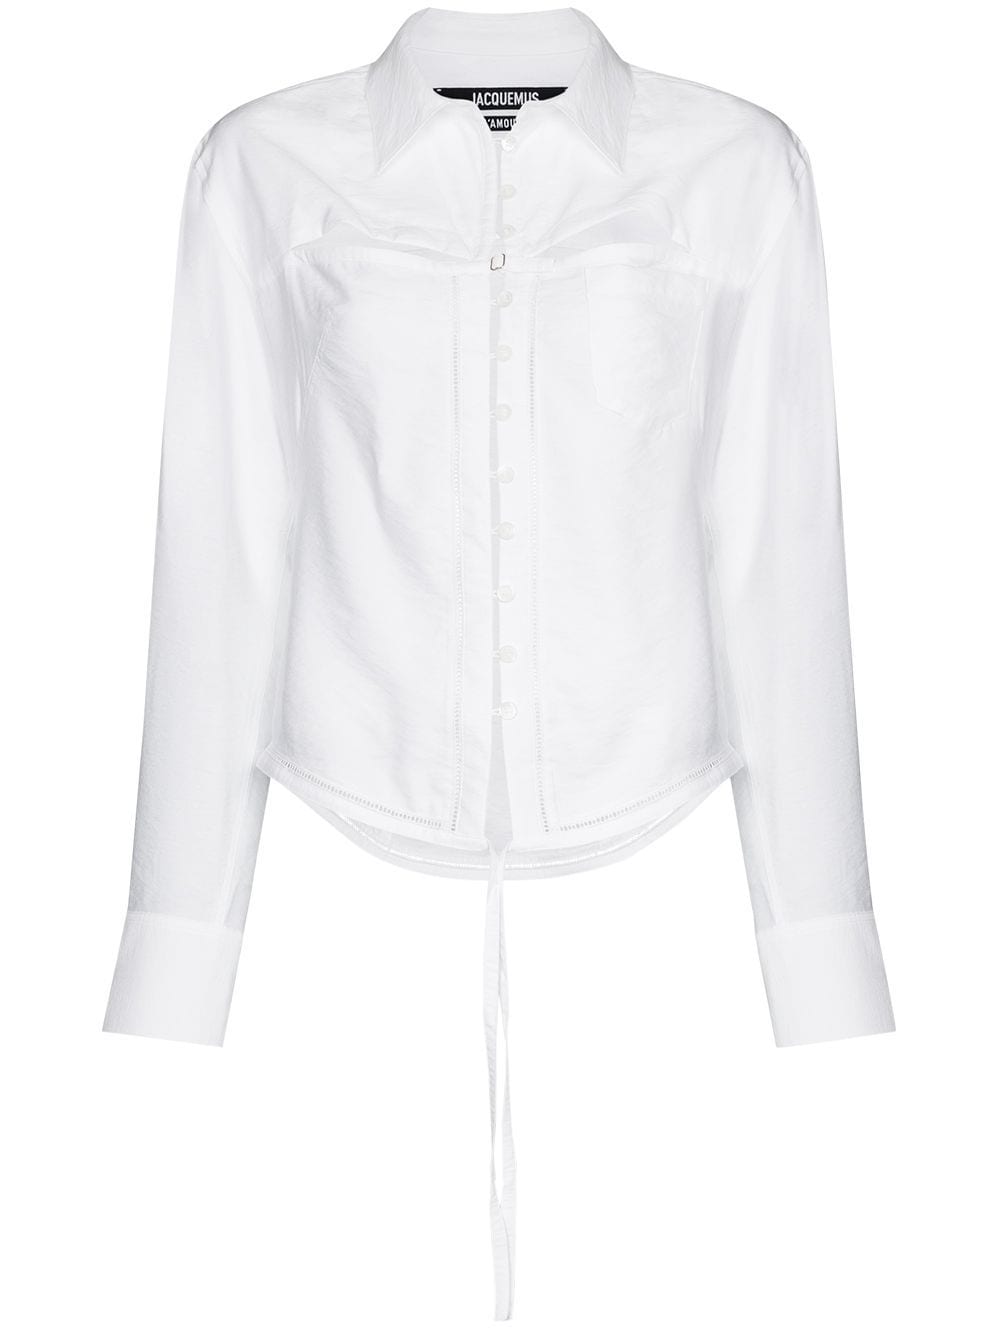 Jacquemus La chemise Nappe cut-out shirt - White von Jacquemus